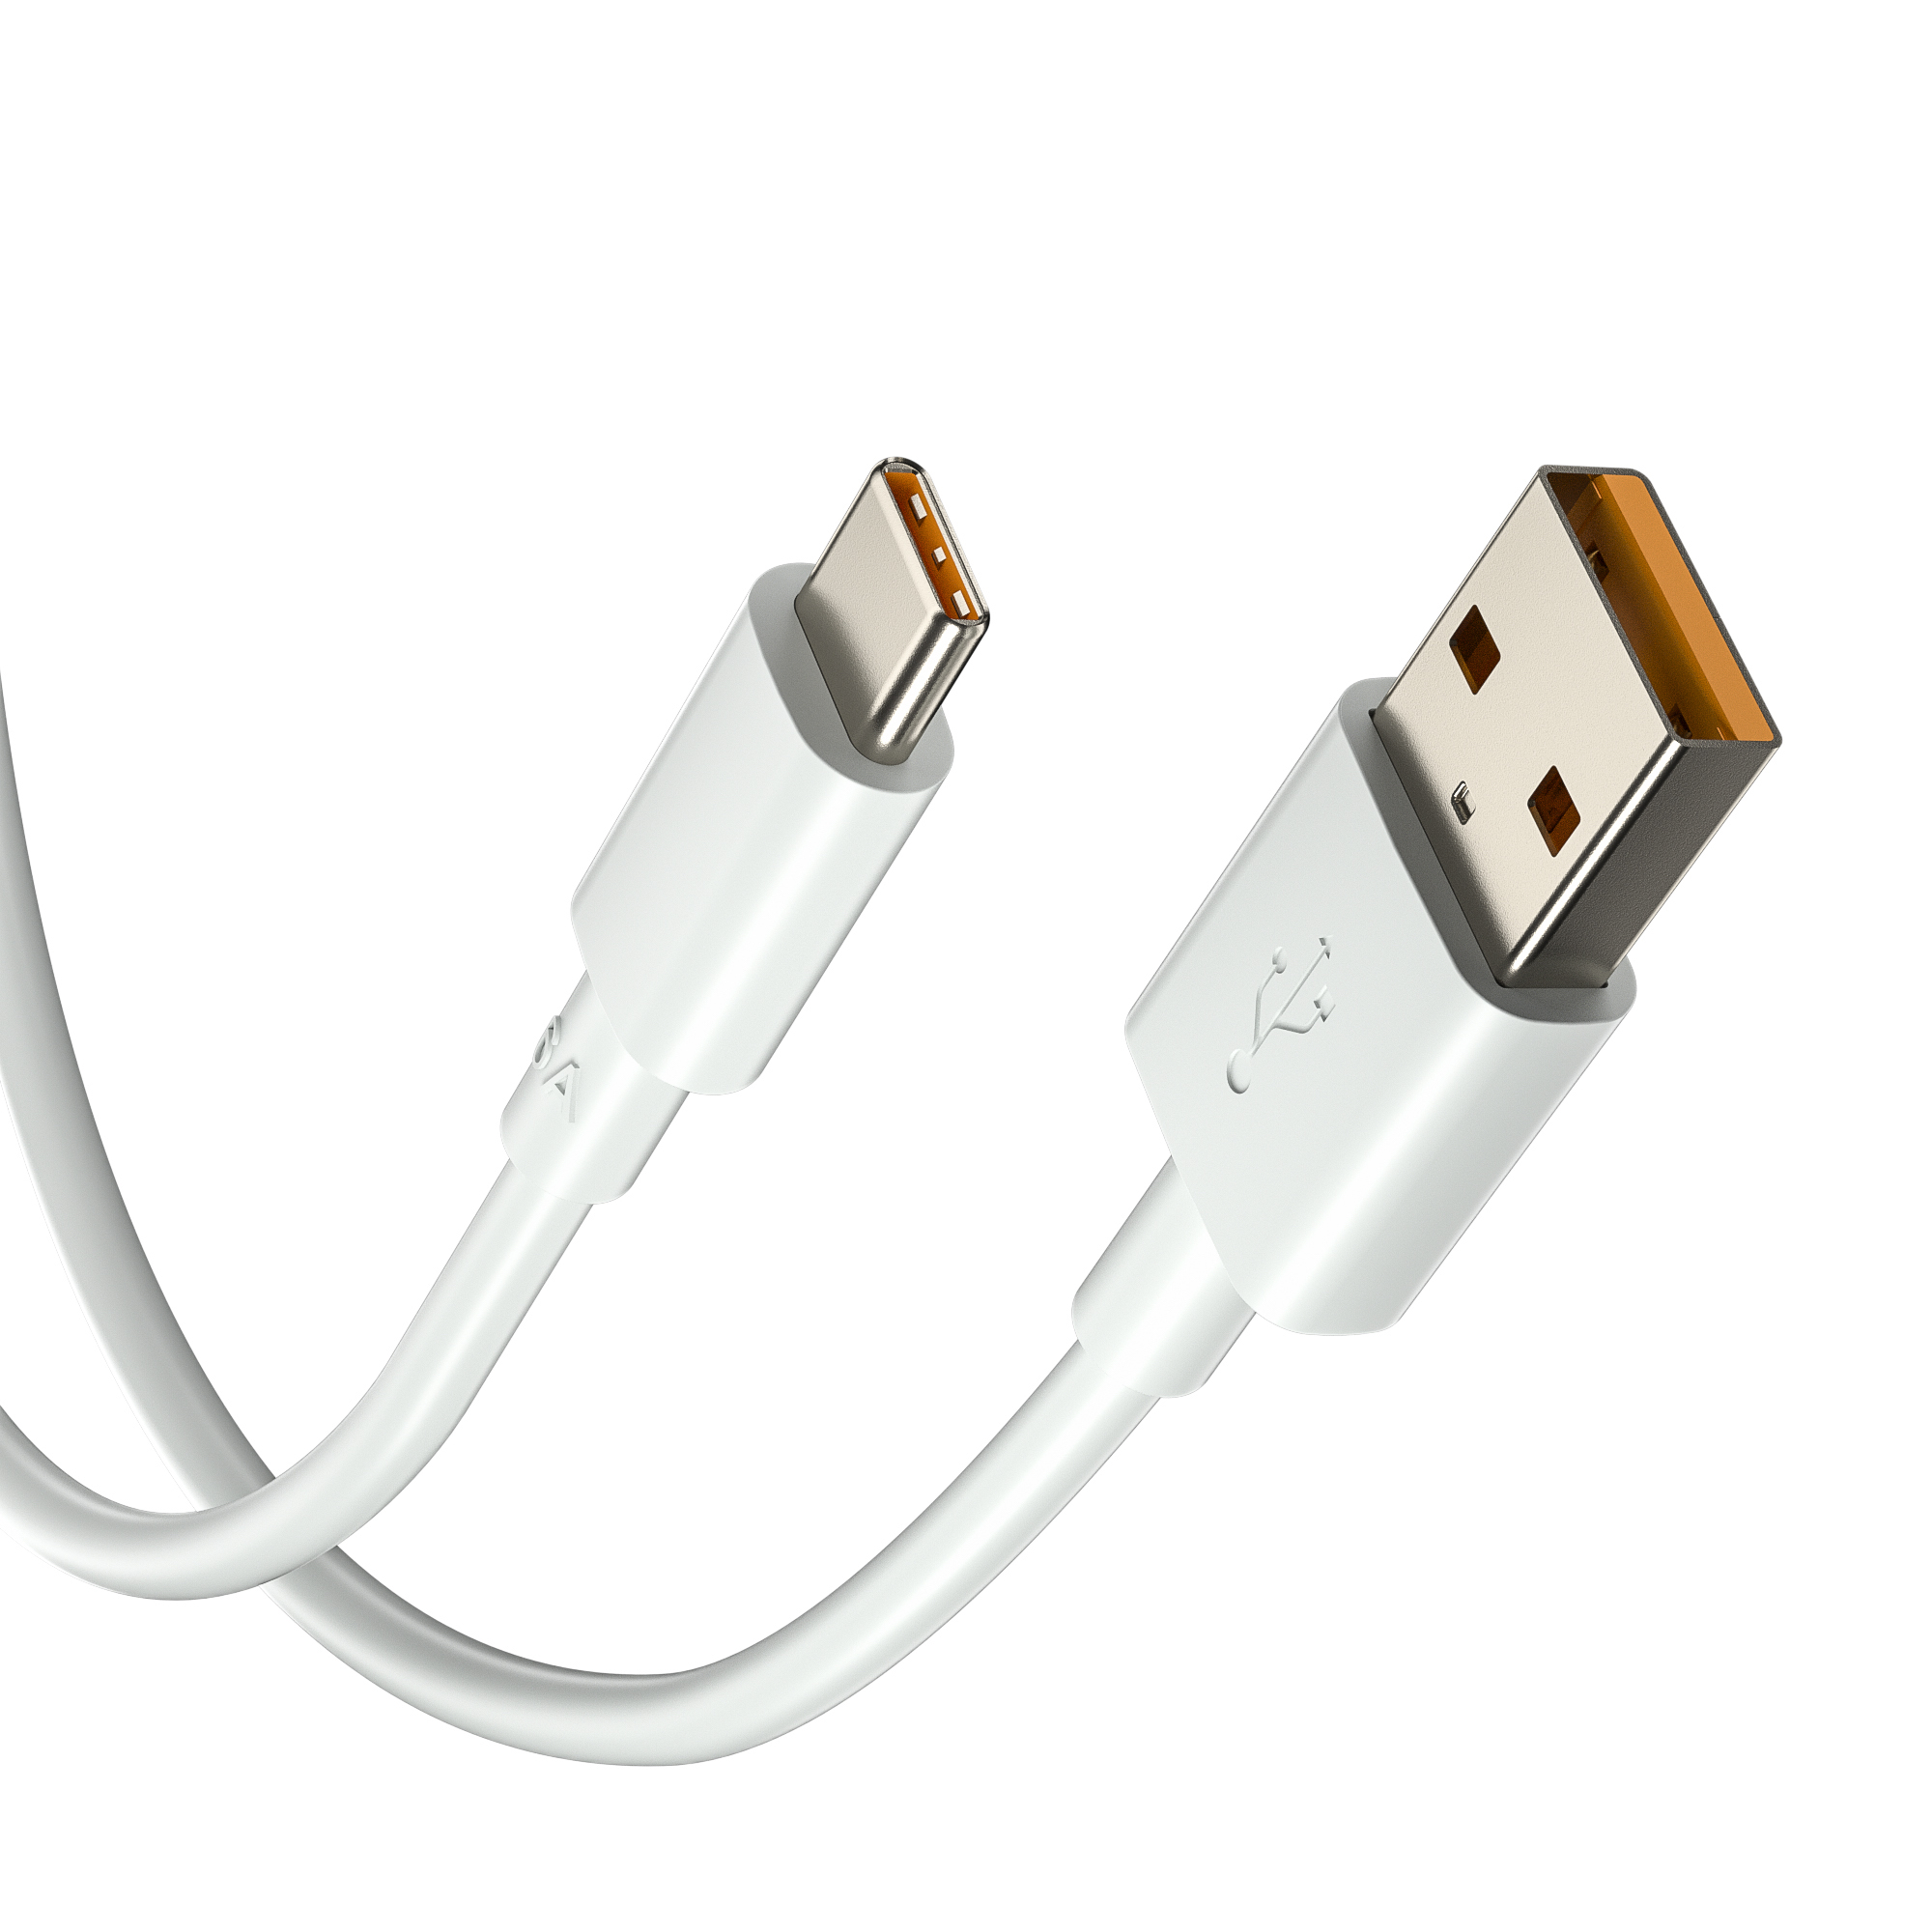 6A Super Rapide Charge USB C Câble Ligne de Données 1m 2m 3FT 6FT pour Huawei Super Rapide Chargeur Type C Câble